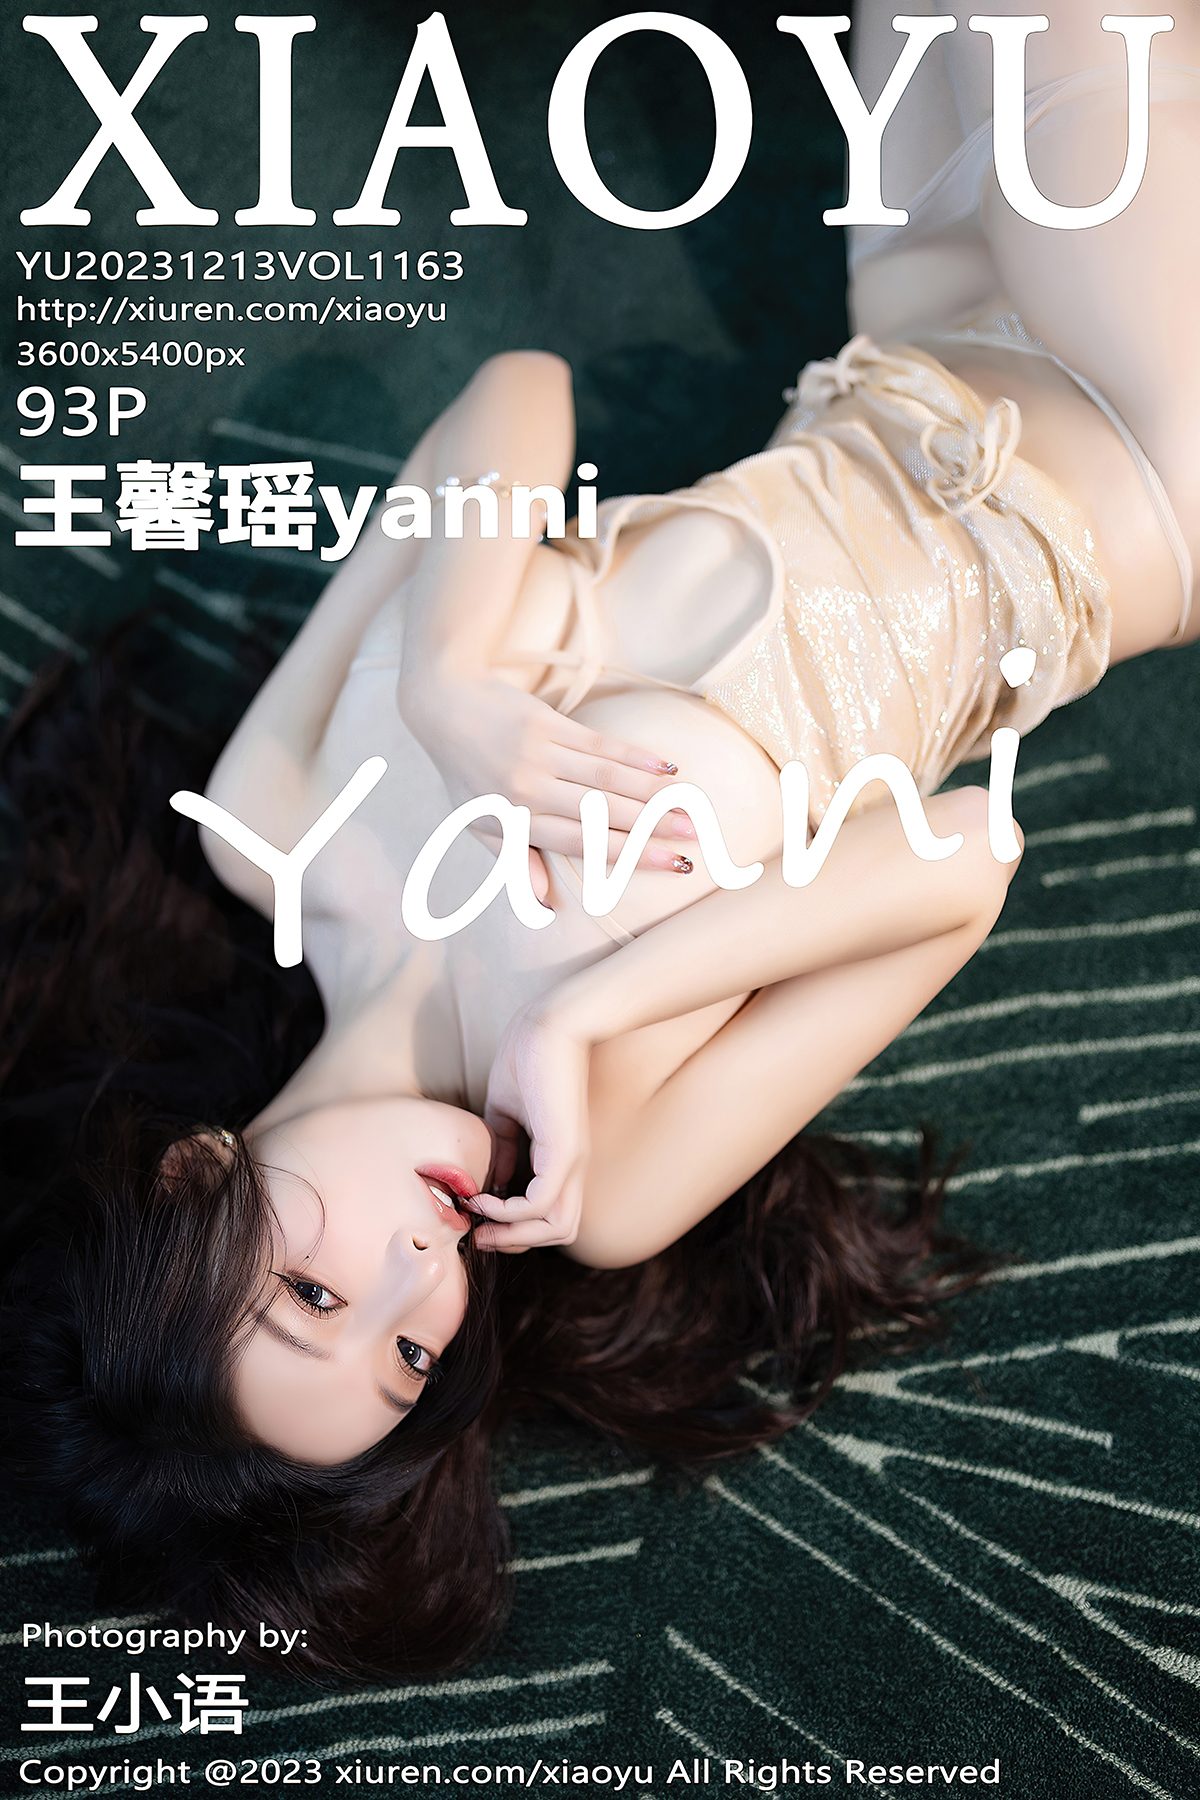 XiaoYu语画界 Vol 1163 Wang Xin Yao Yanni 0031 0027521720.jpg